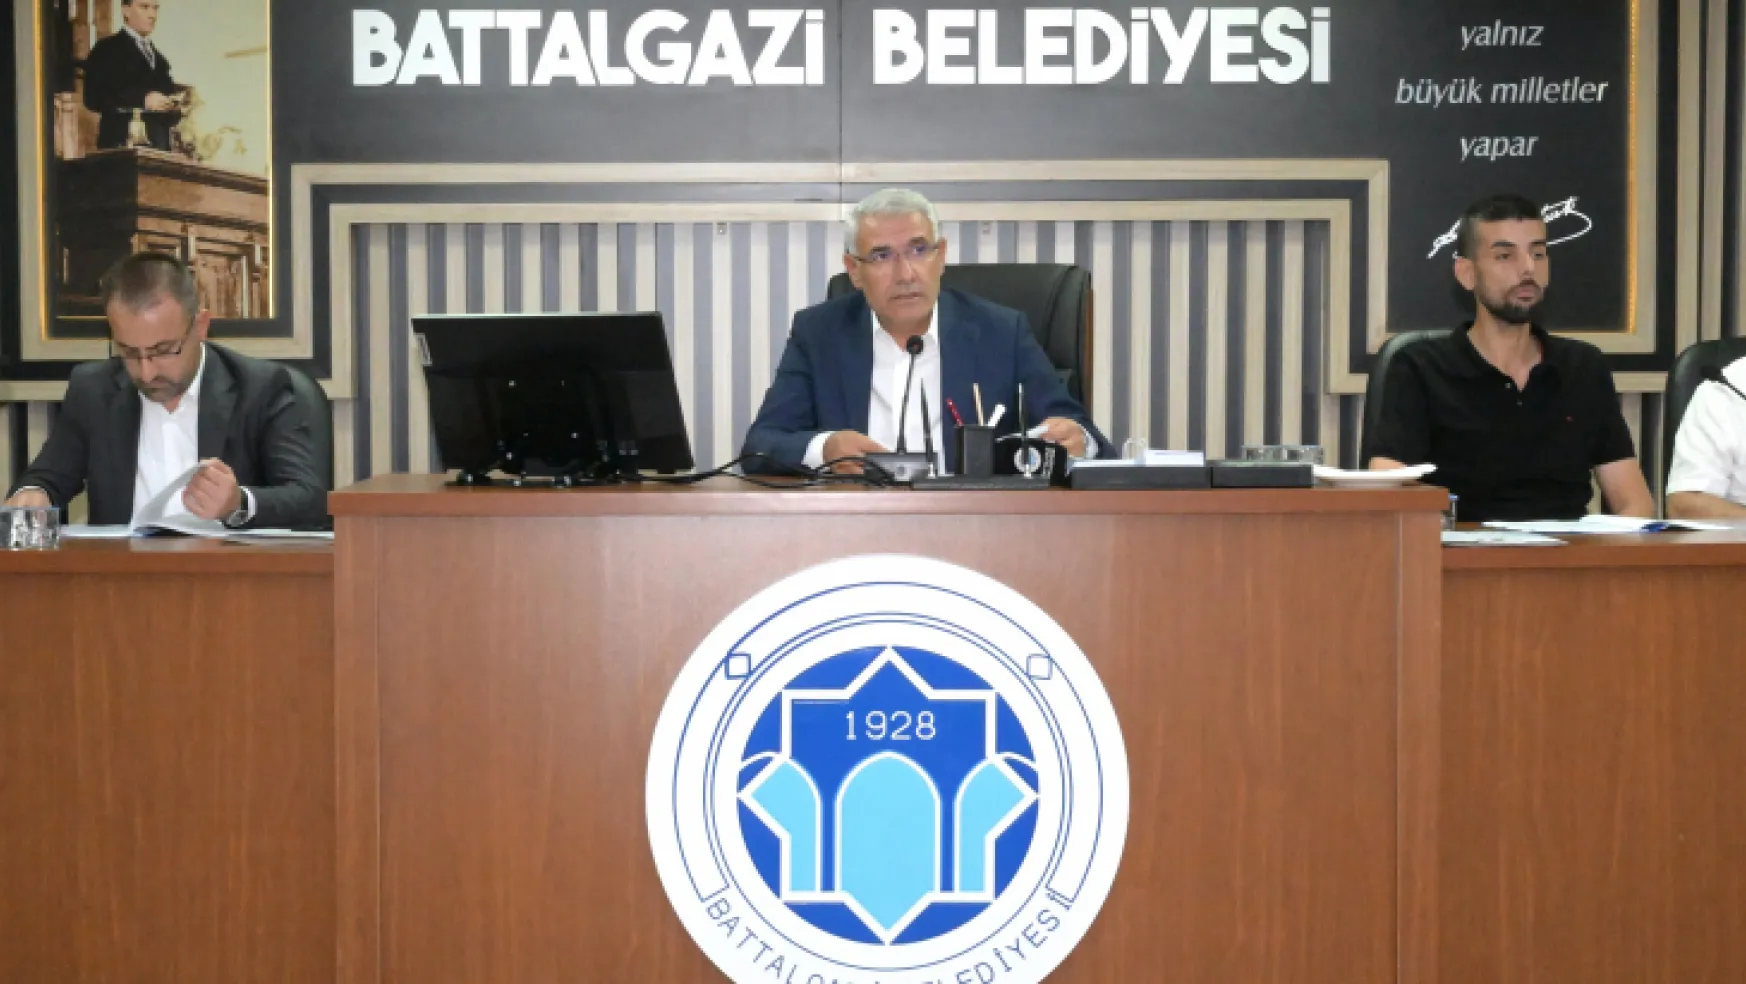 Battalgazi Belediyesi Eylül Ayı Meclis Toplantısı Yapıldı